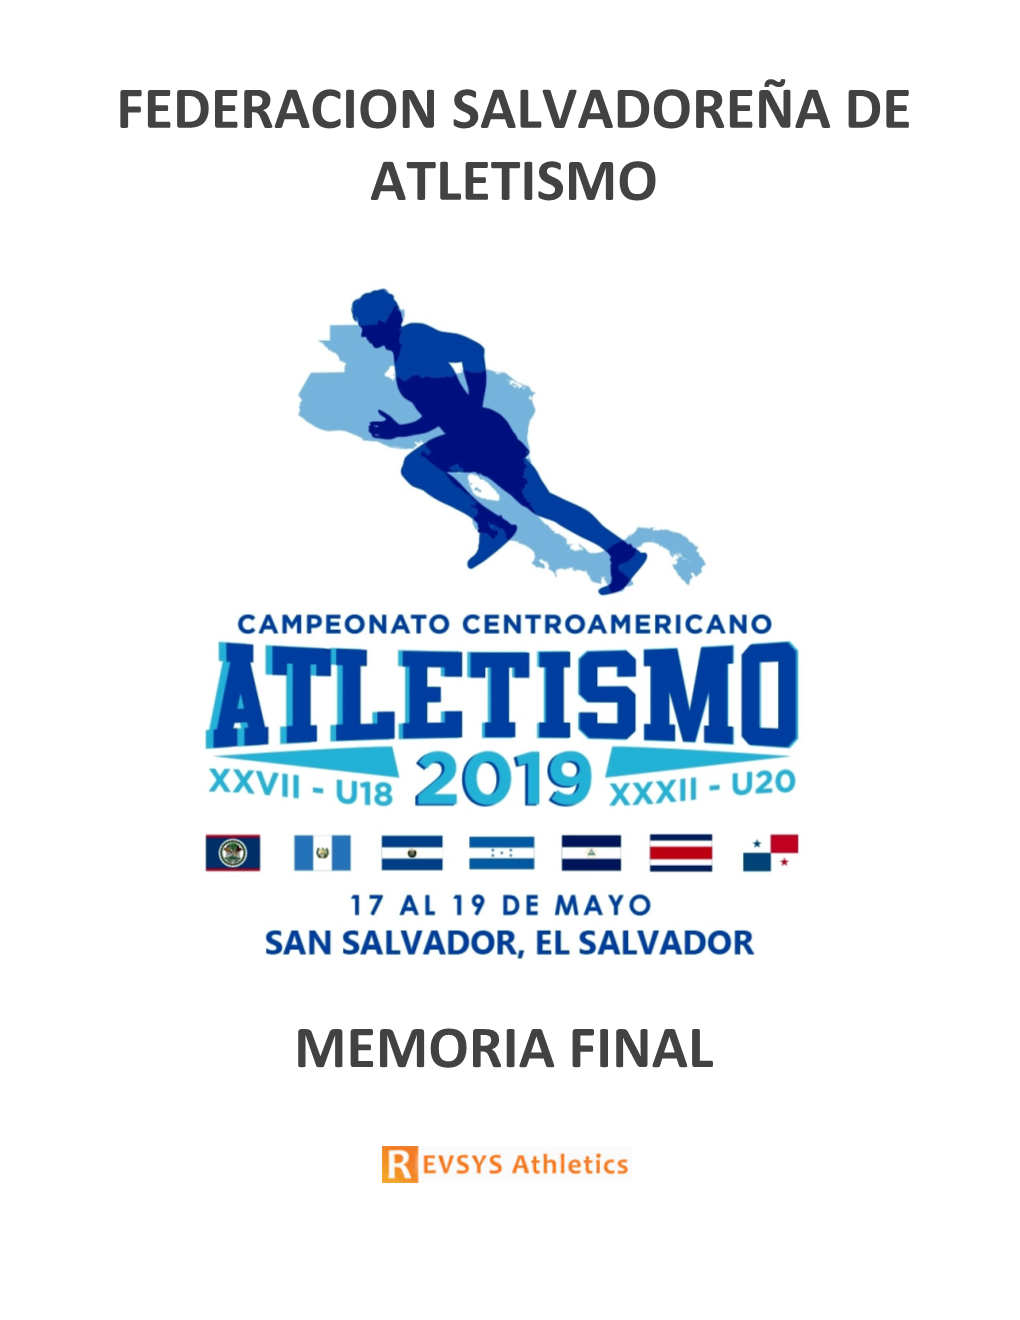 Campeonato Centroamericano De Atletismo Xxvii-U18 Y Xxxii-U20